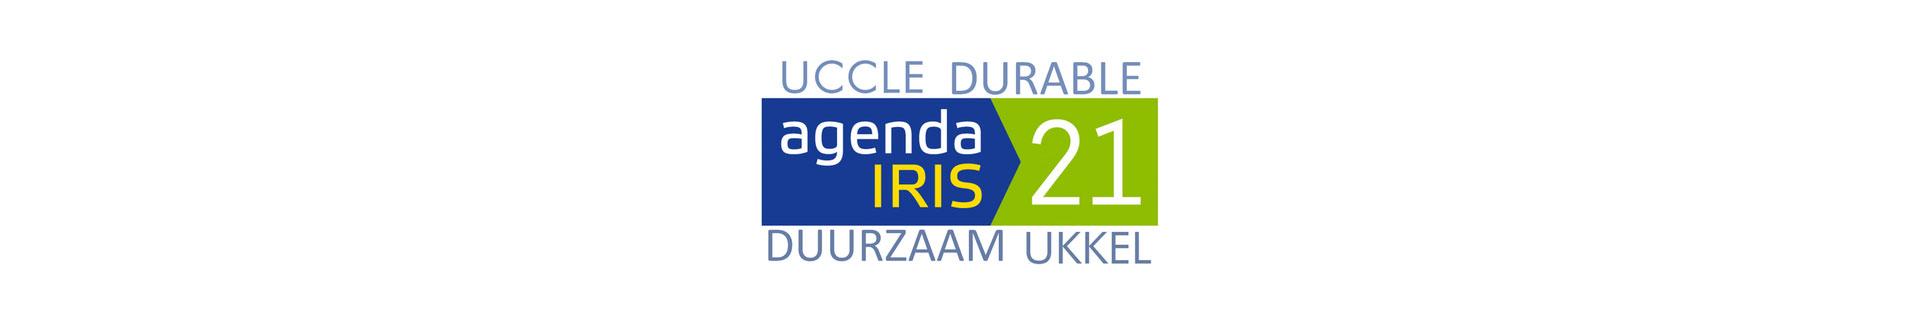 Agenda 21 local